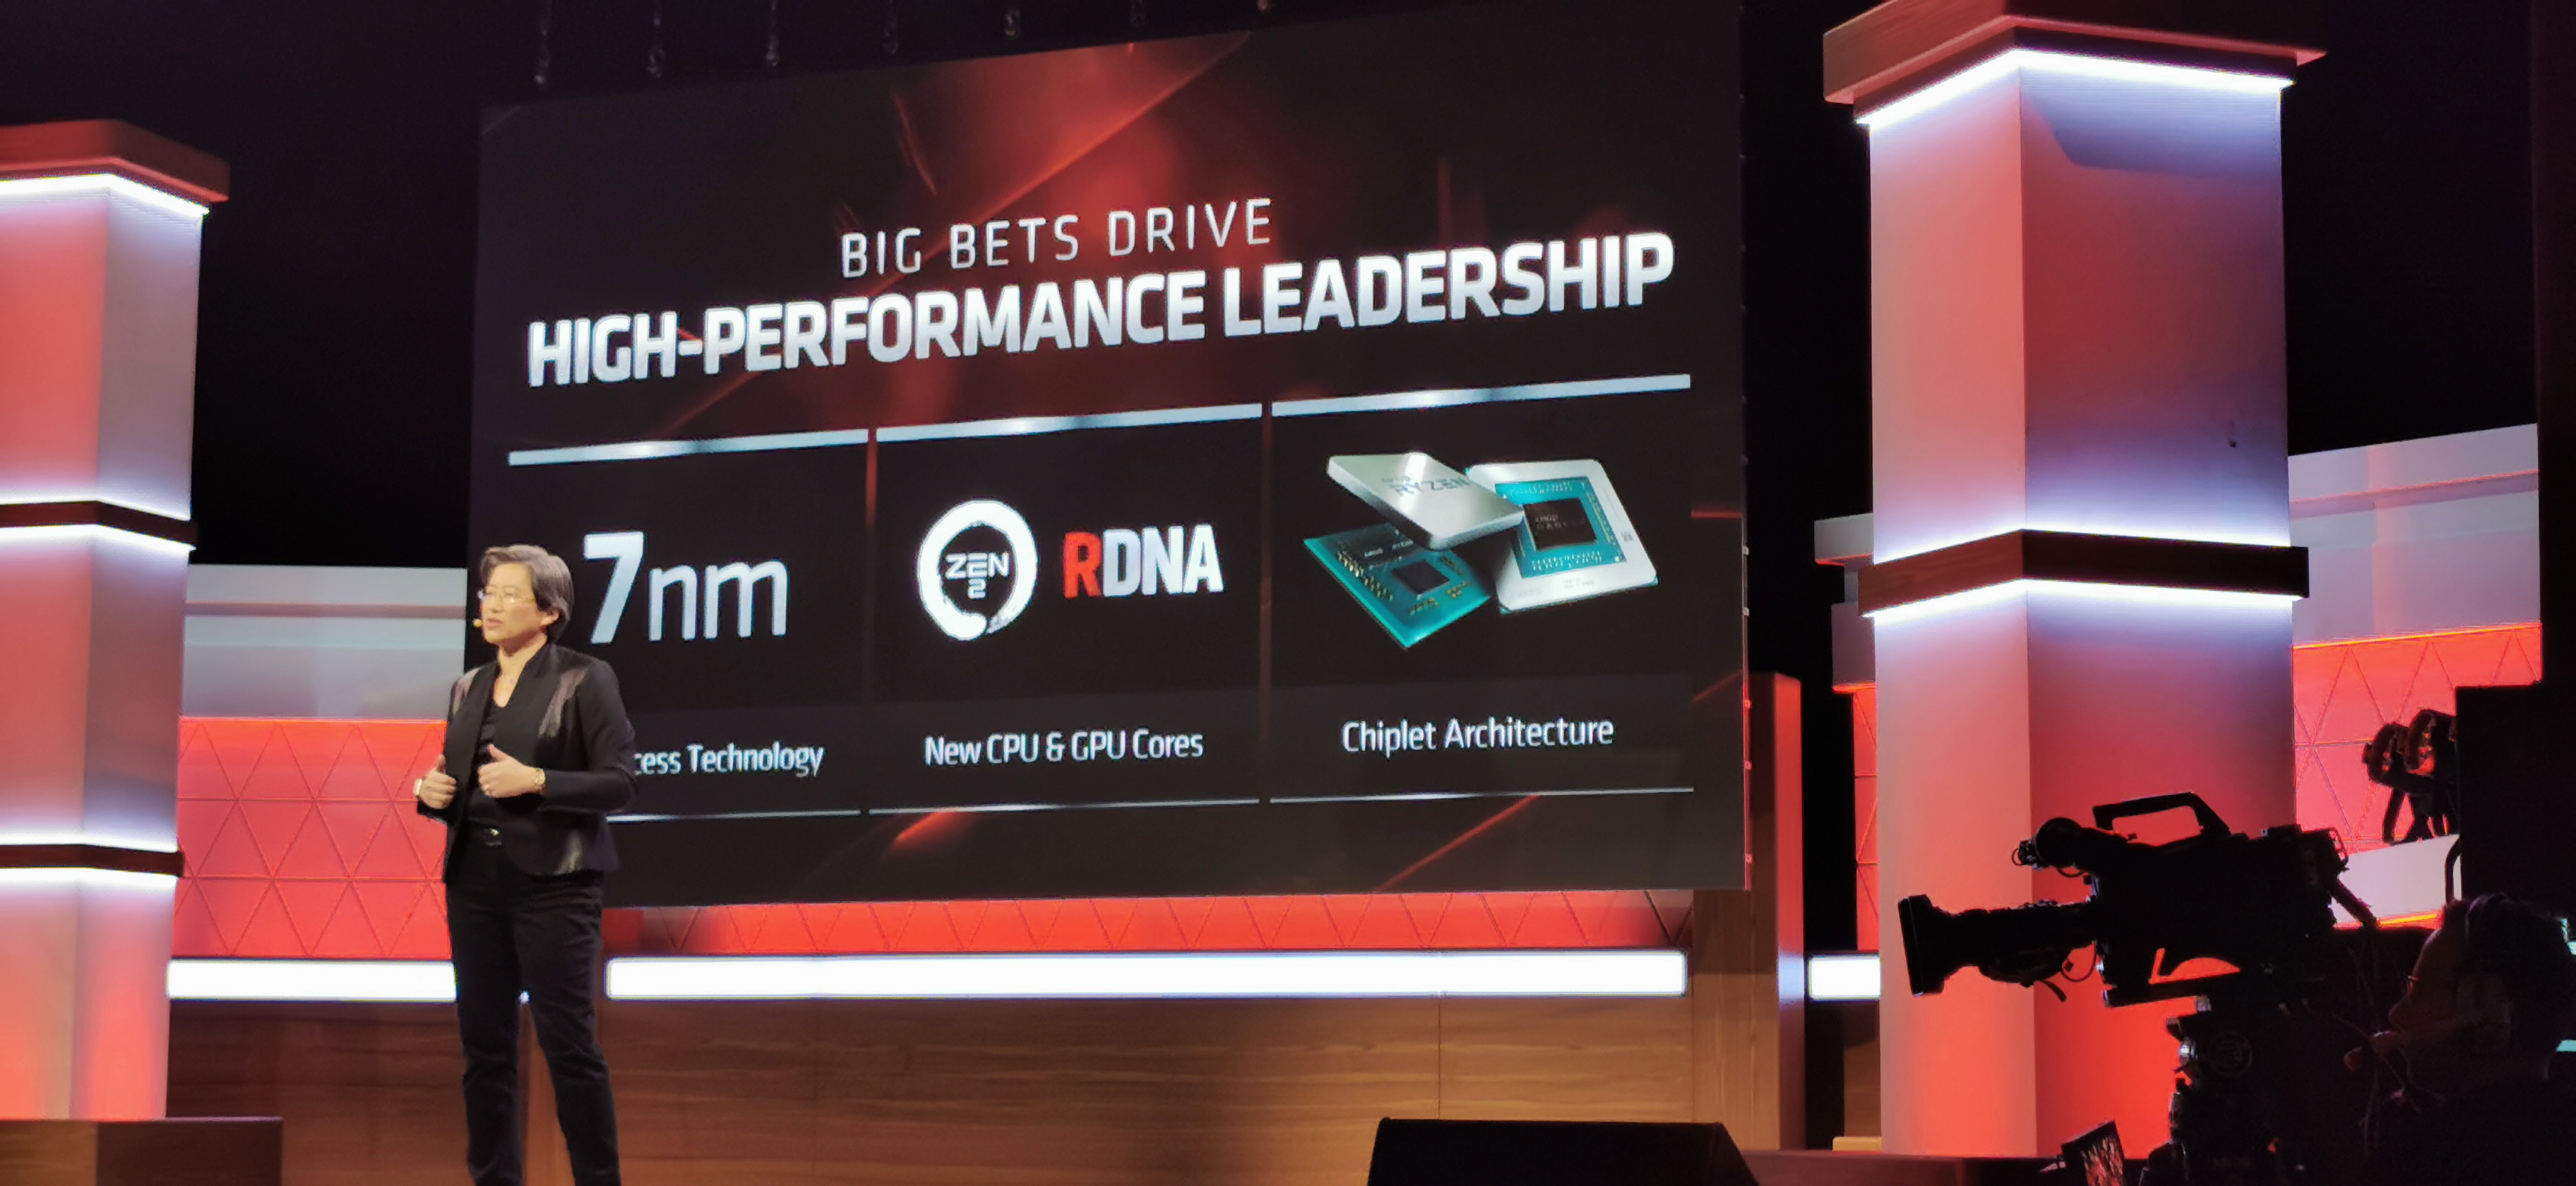 هل فاتك ما أعلن في مؤتمر AMD Next Horizon Gaming؟ هنا ستجد كل ما تم الكشف عنه